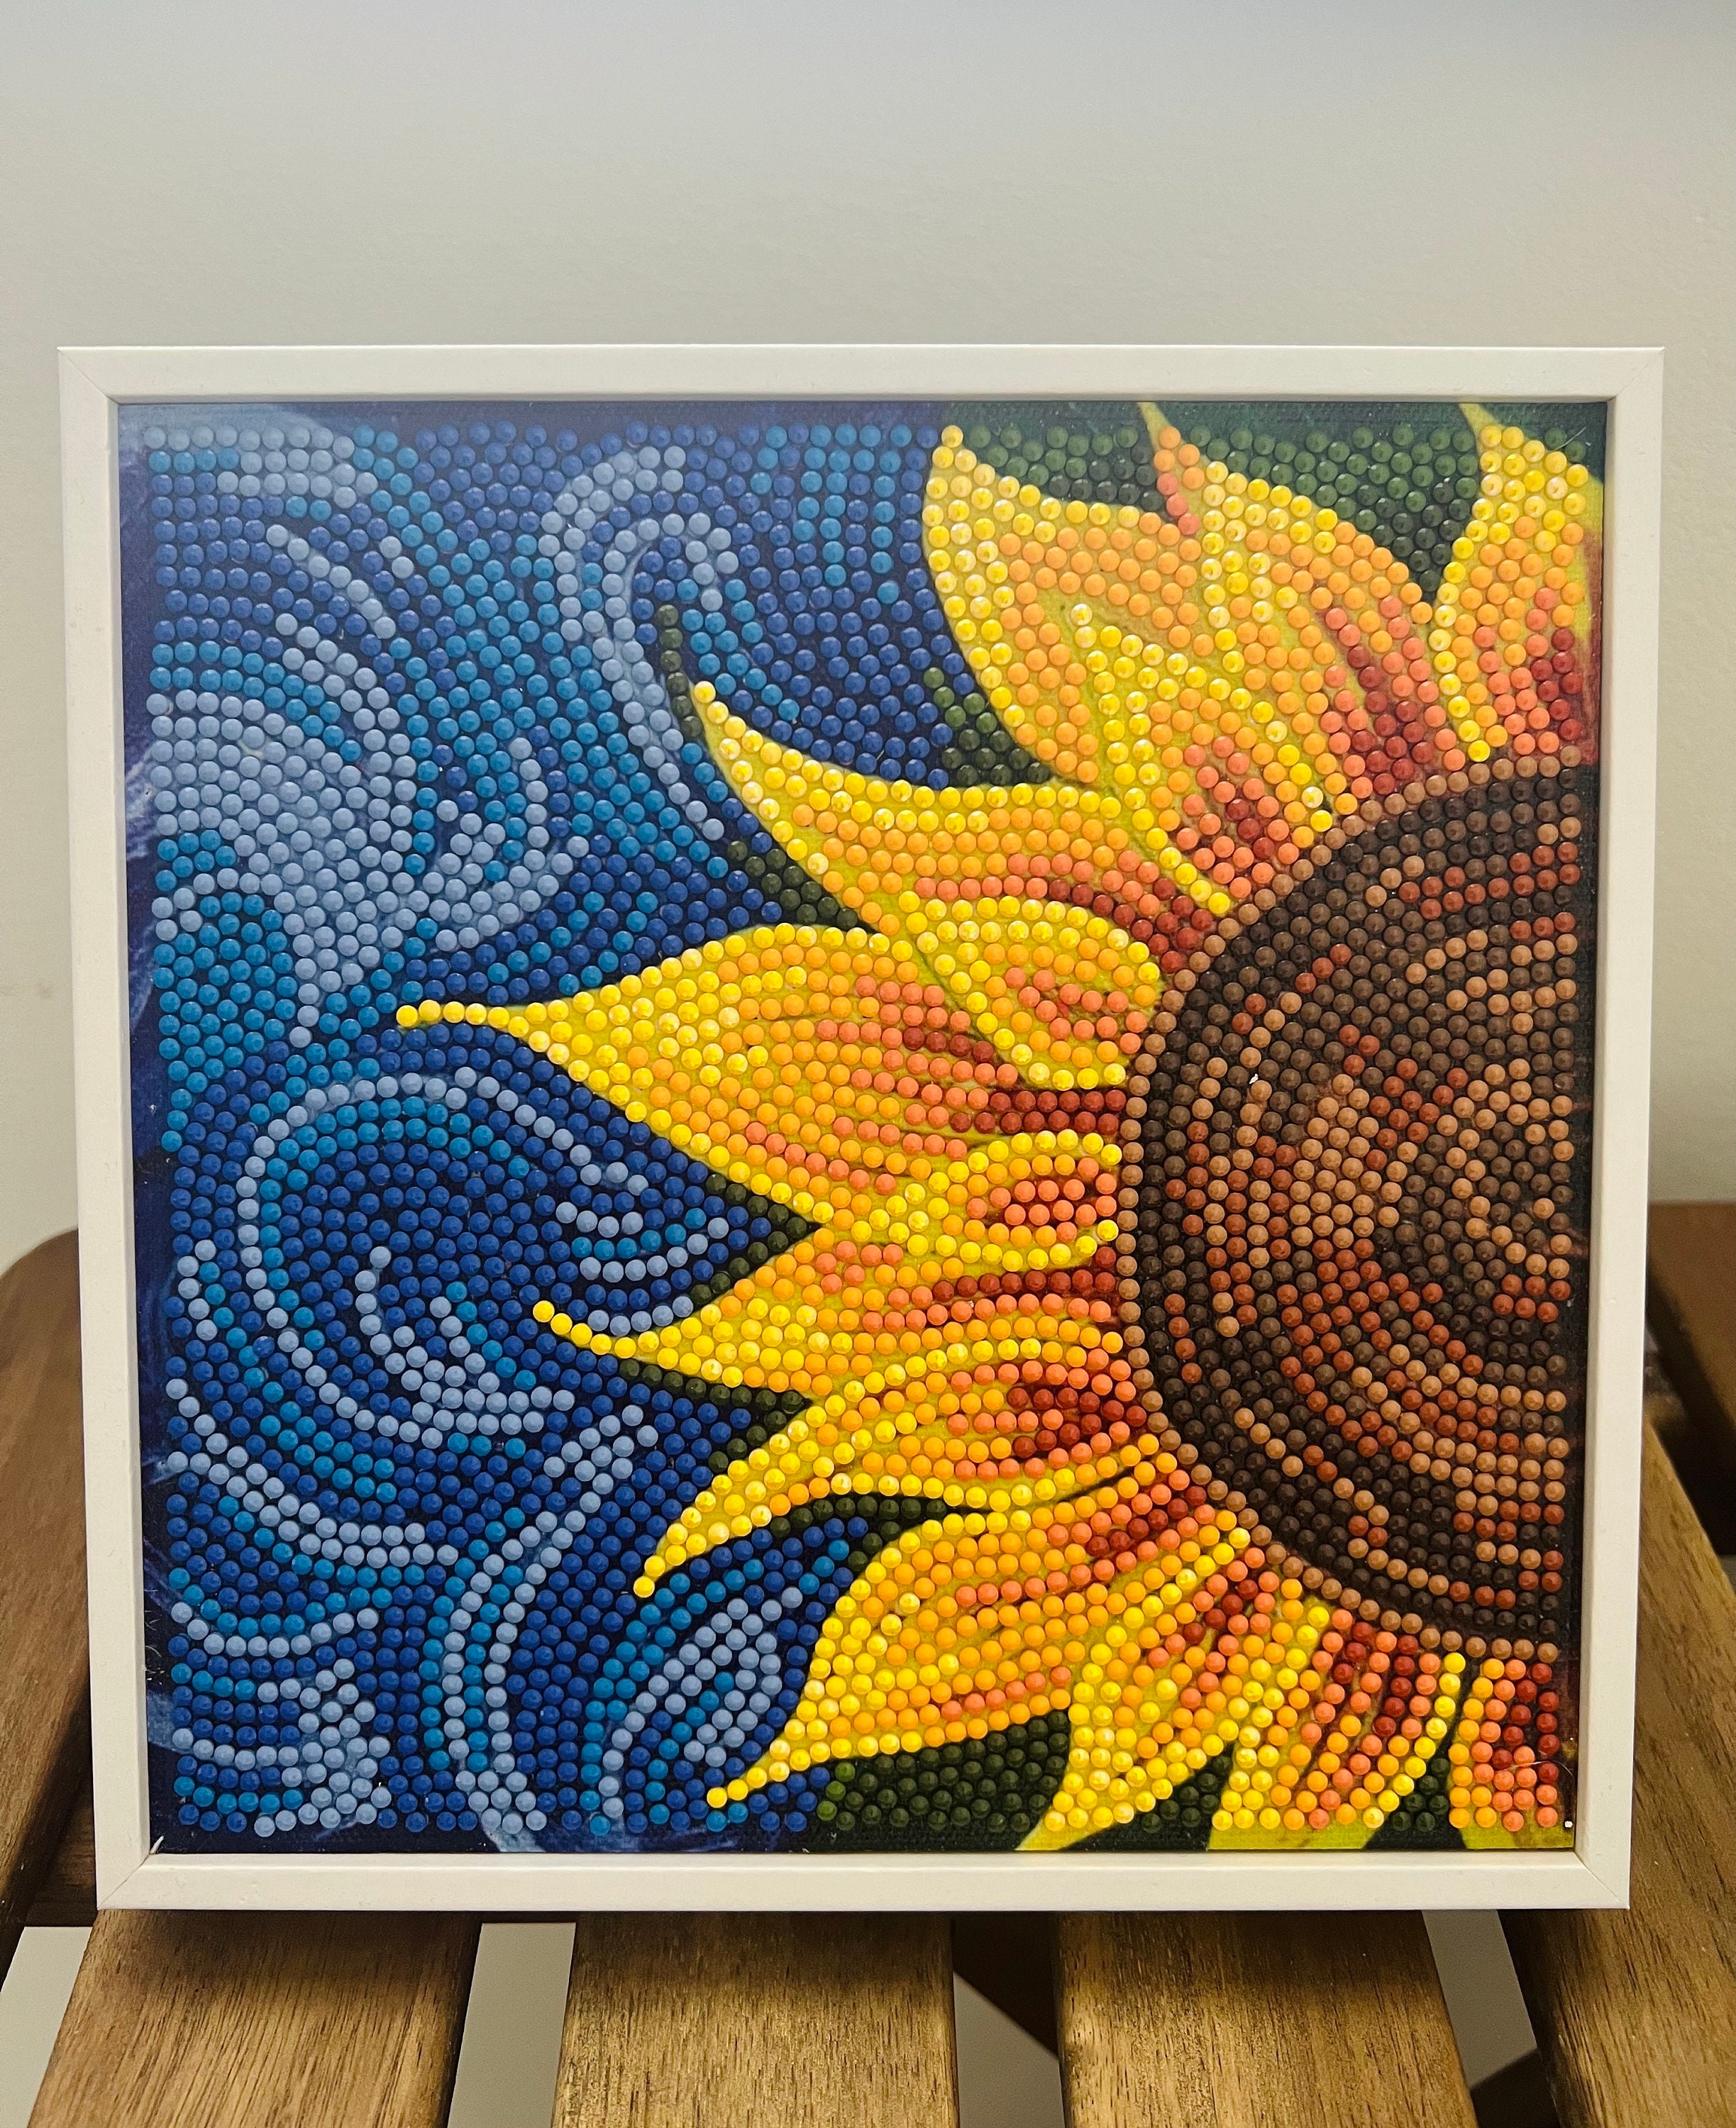 Yellow Sunflower Diamond Painting – All Diamond Painting